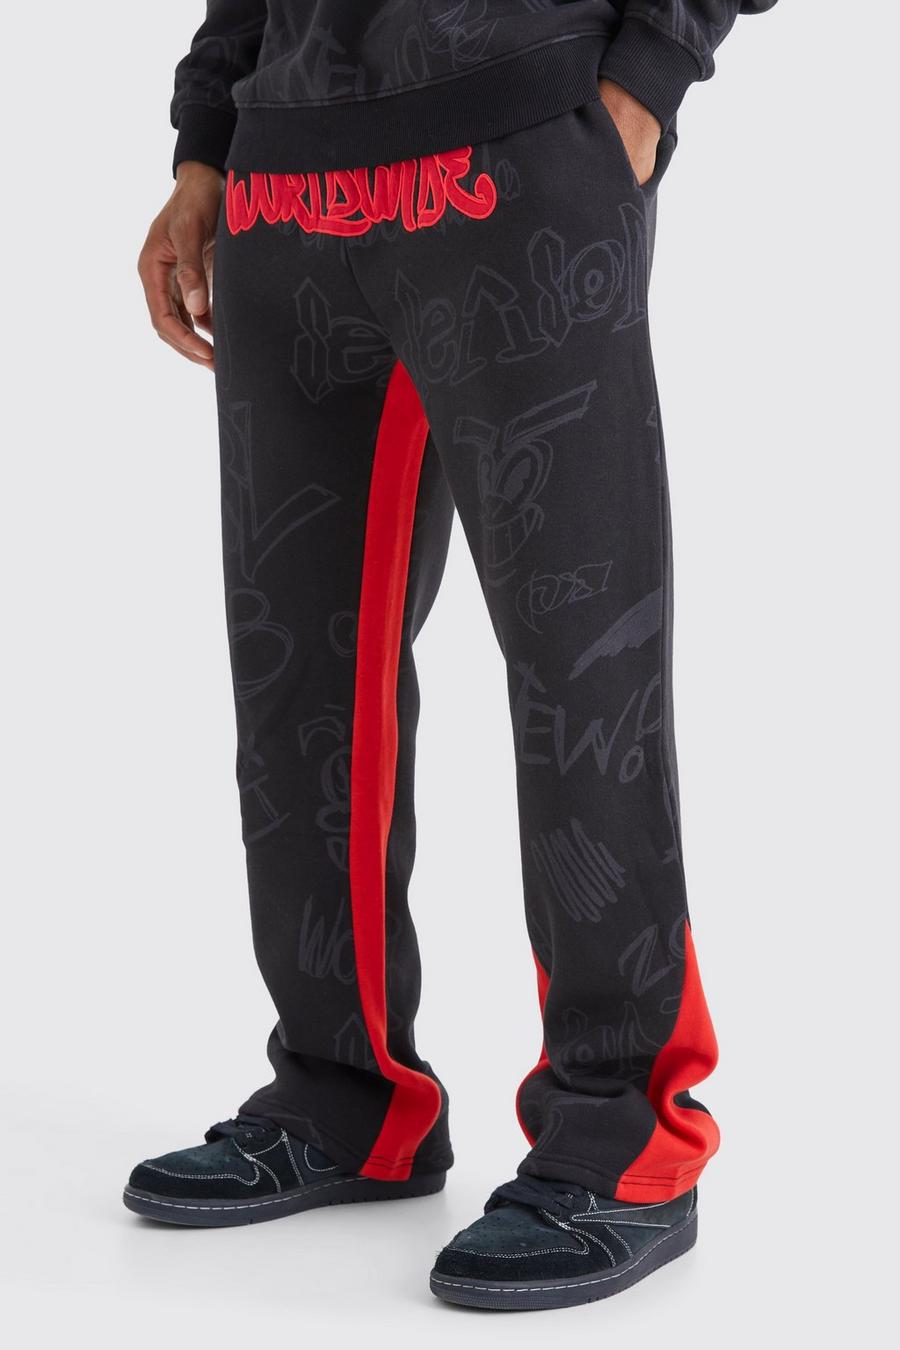 Pantaloni tuta stile Graffiti con inserti e applique, Black image number 1